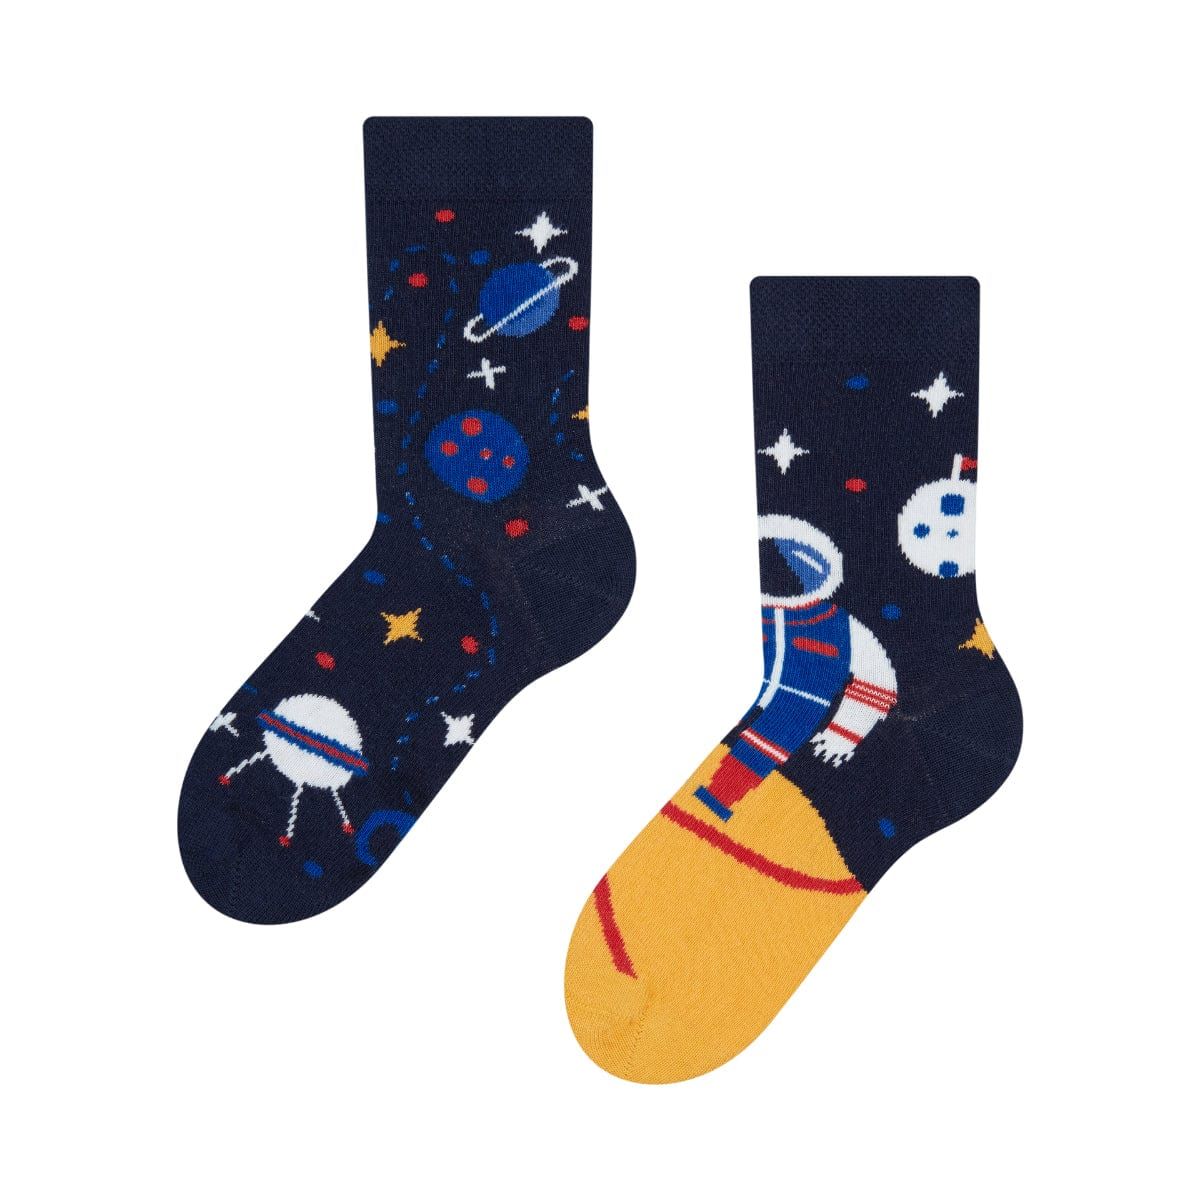 Chaussettes Enfants Astronaute 23/26 - Jumpl